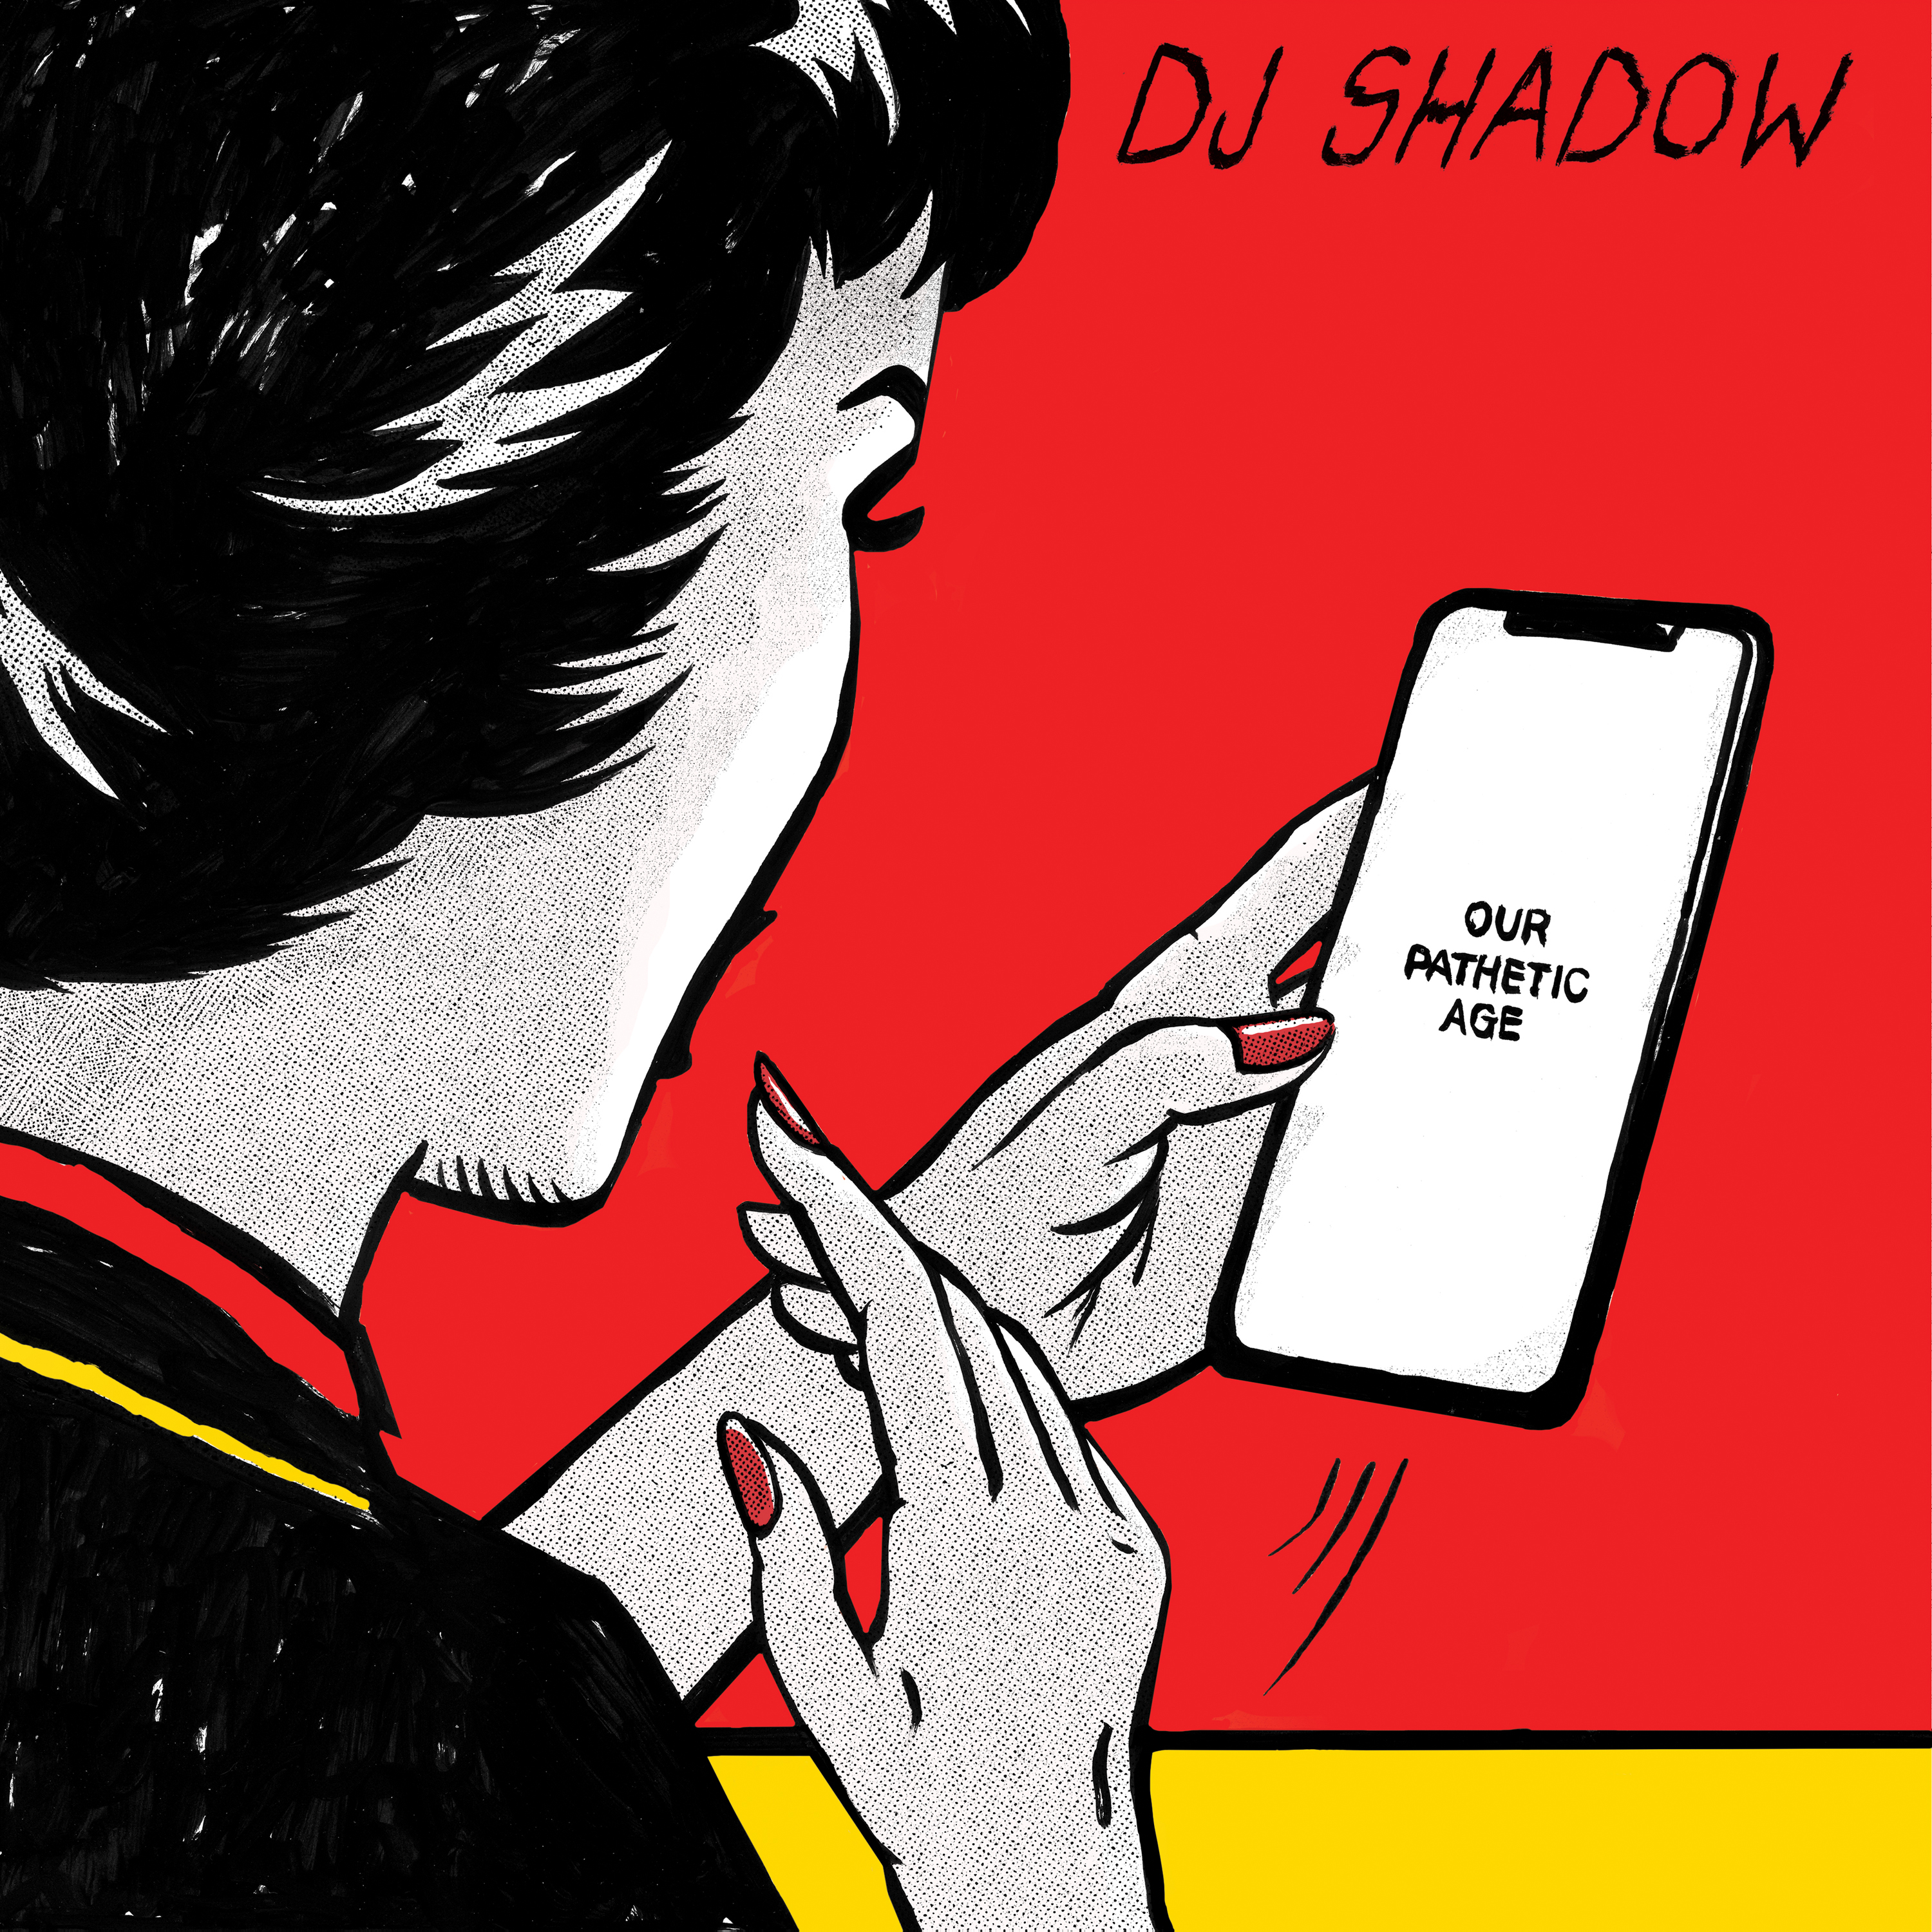 DJ Shadow z podwójnym albumem Our Pathetic Age